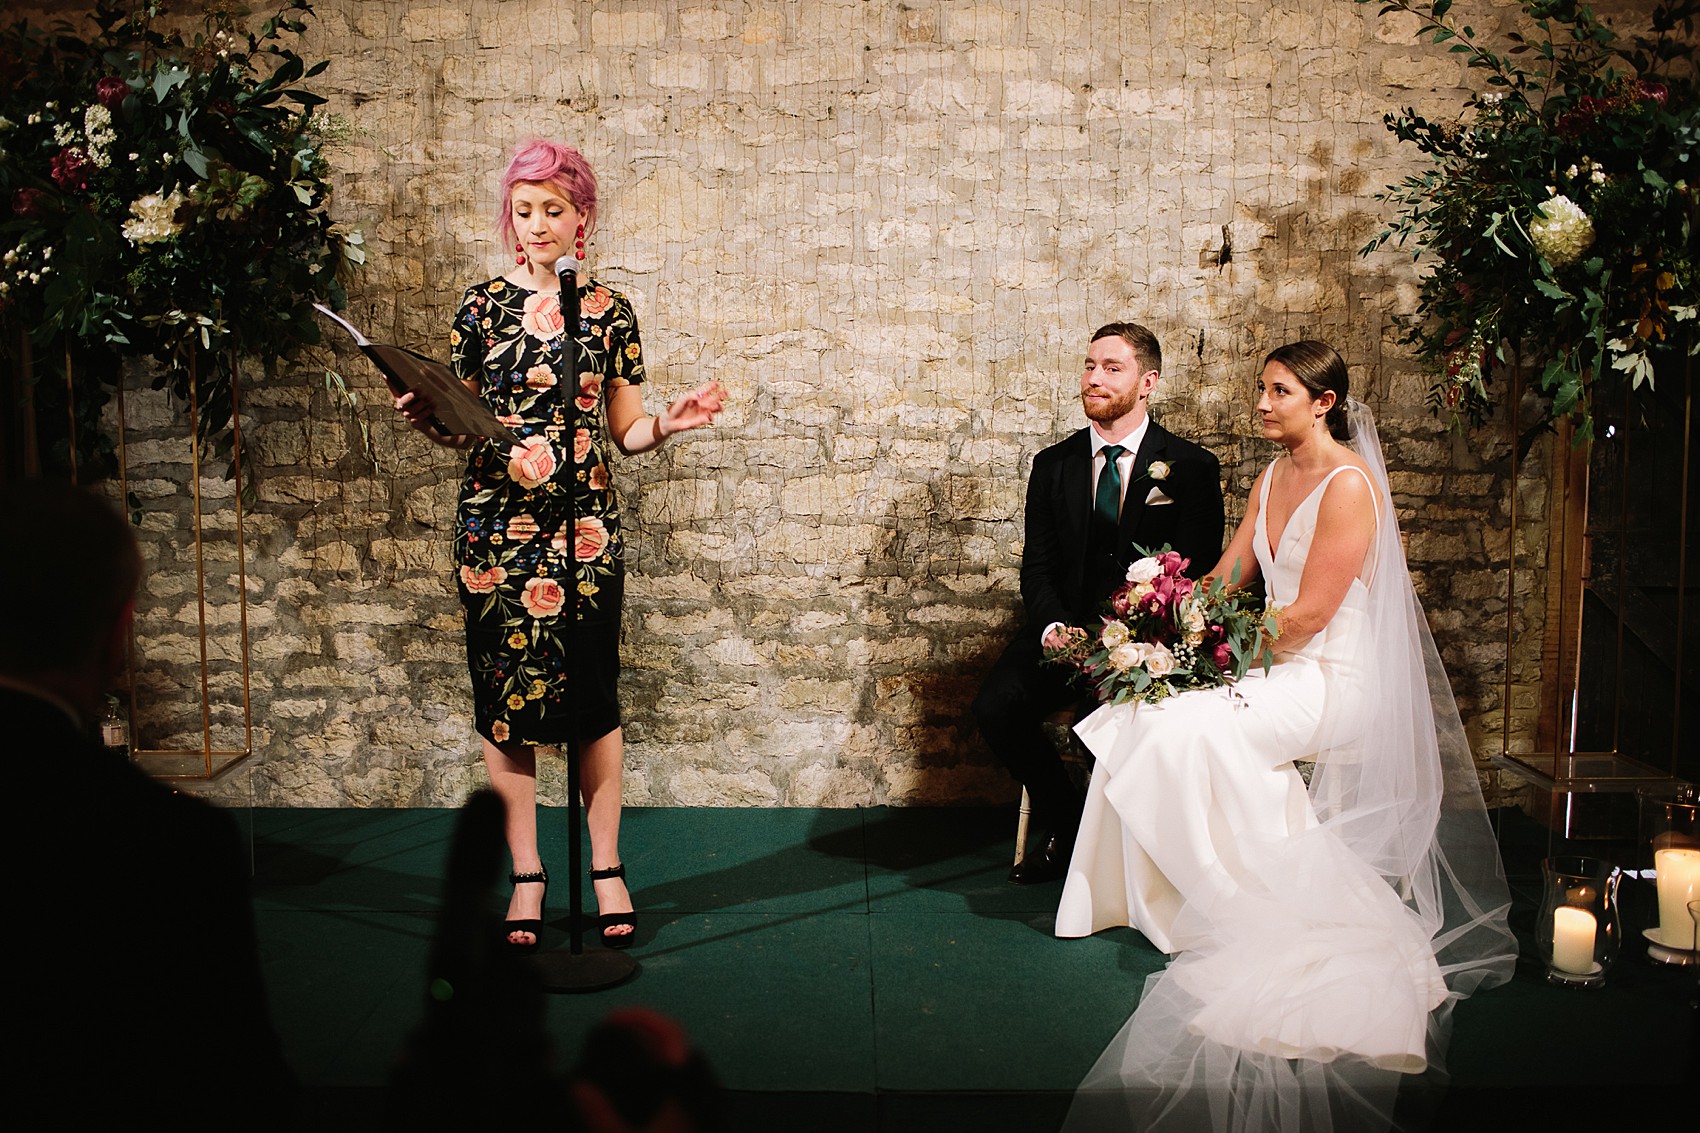 A Chosen By One Day dress tipi wedding  - A Backless Chosen By One Day Dress For A Colourful Oxford Barn Wedding full of Australian Glamour